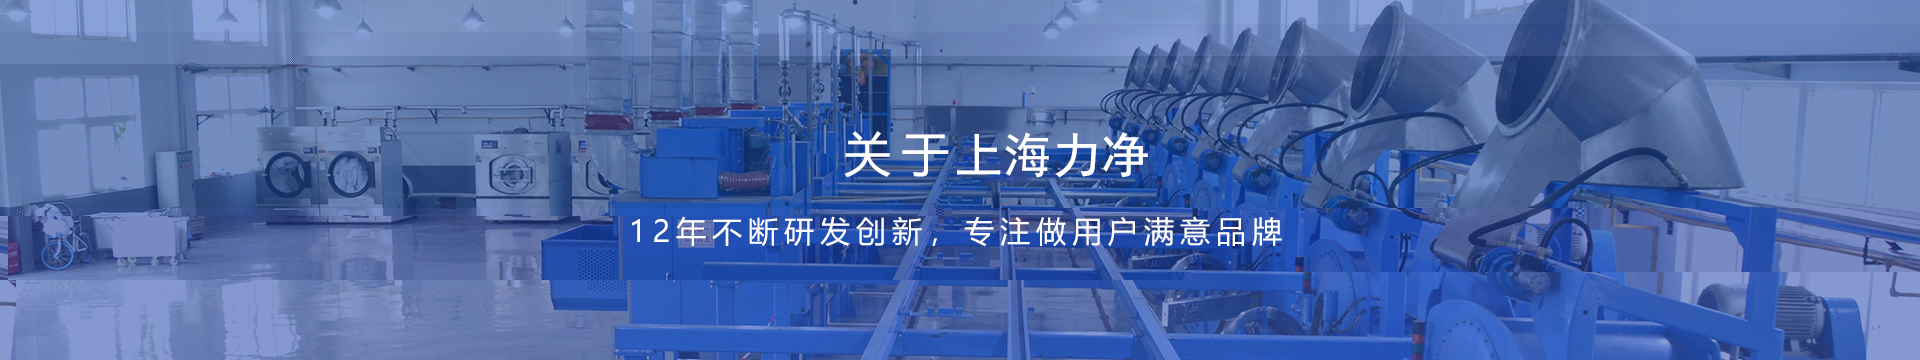 上海力净工业集成洗涤设备